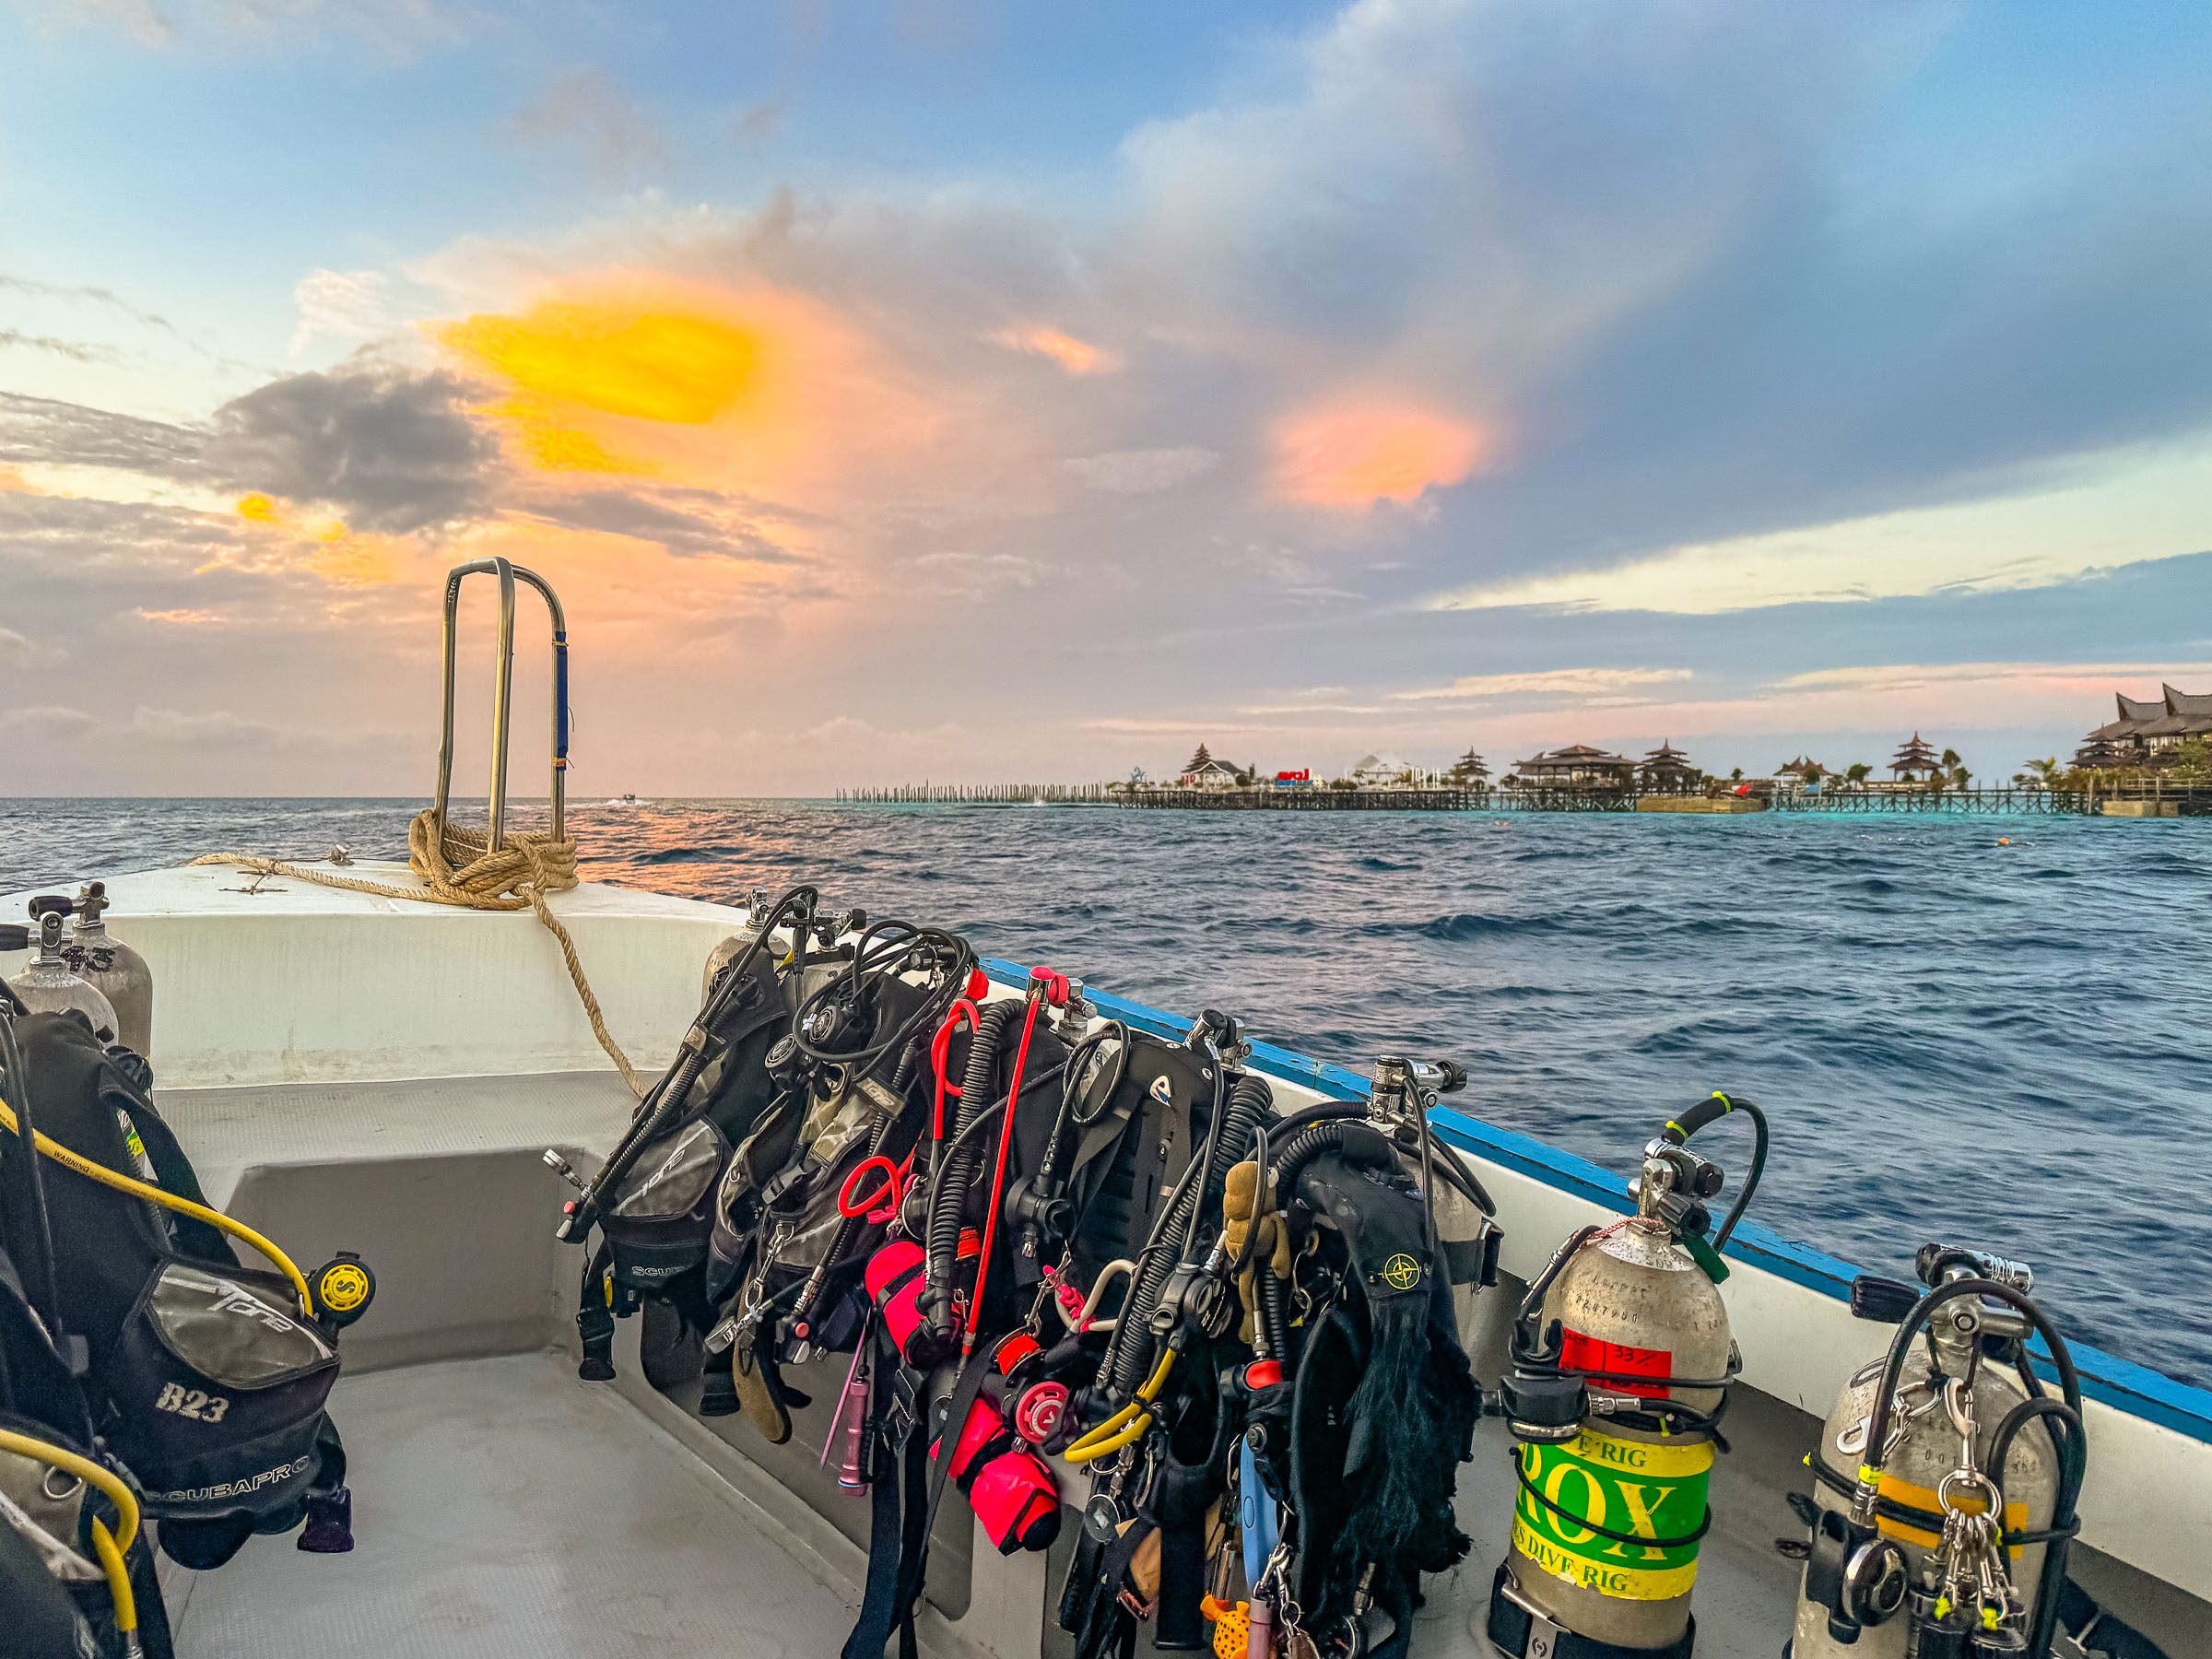 Seaventures Dive Rig Sipidan Mabul Scuba Diving Review